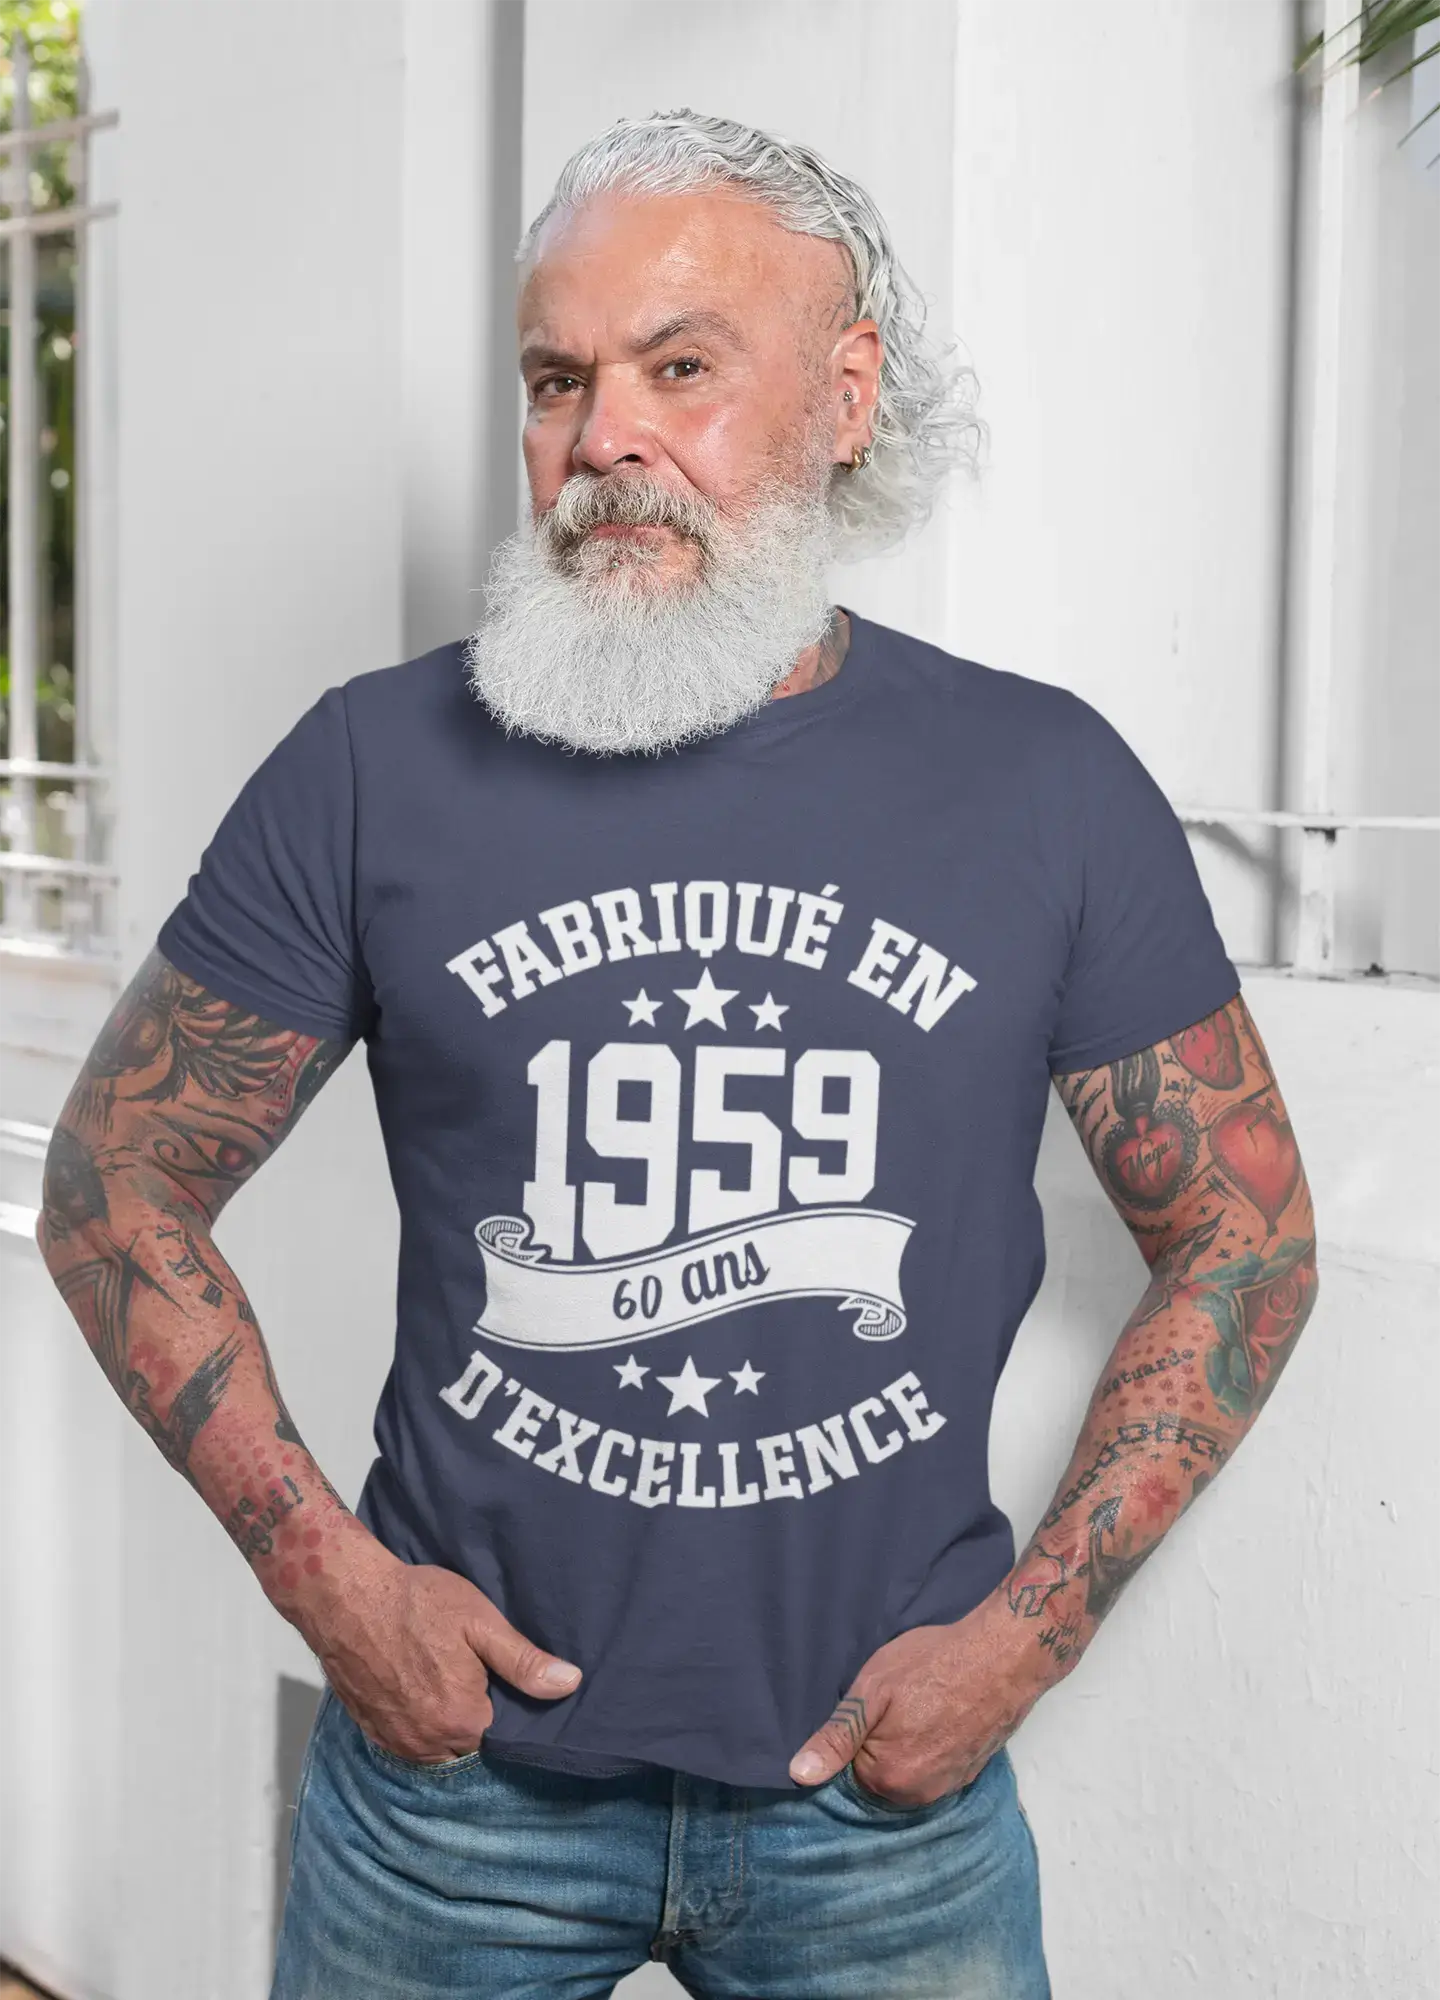 ULTRABASIC – Hergestellt im Jahr 1959, 60 Jahre alt. Weißes Unisex-T-Shirt